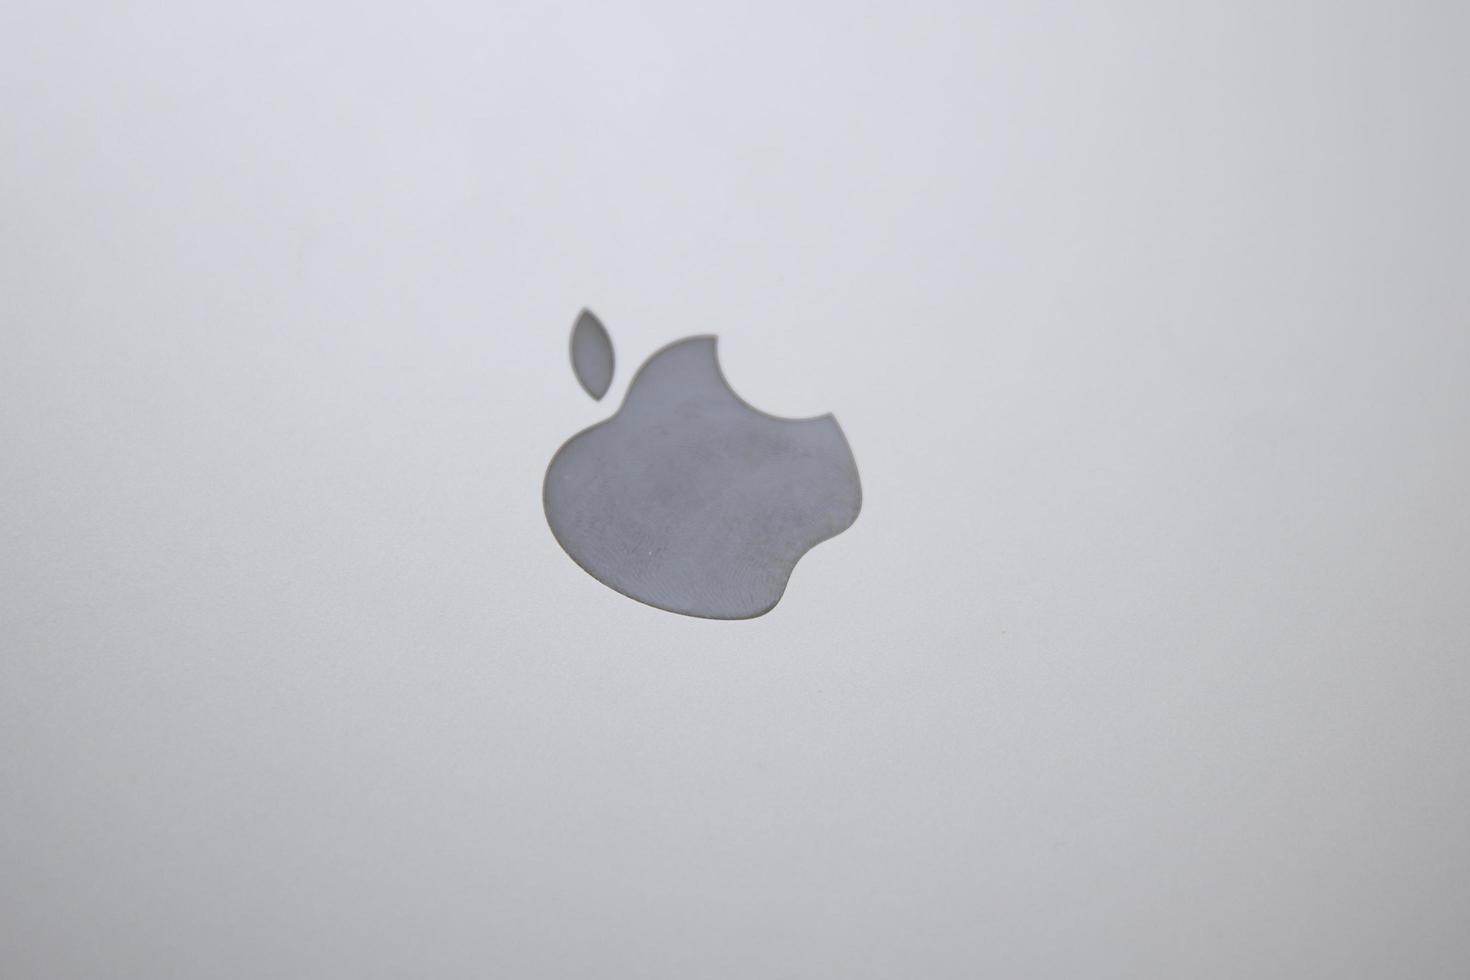 belgrado, serbia, 2020 - dettaglio dal computer macbook. il macbook è un marchio di computer notebook prodotto da apple inc. foto